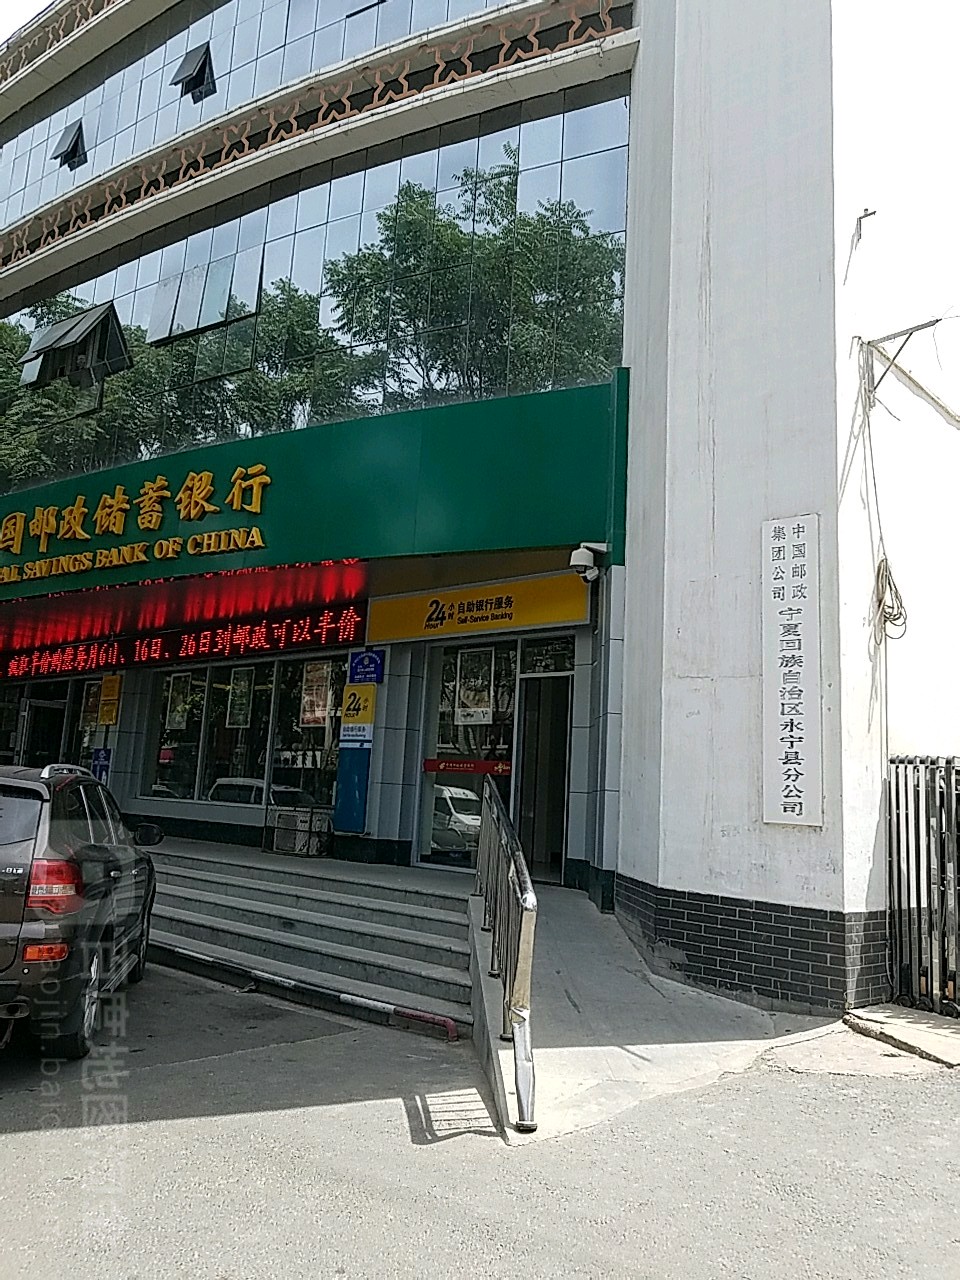 中國郵政儲蓄銀行24小時自助銀行(南街支行)